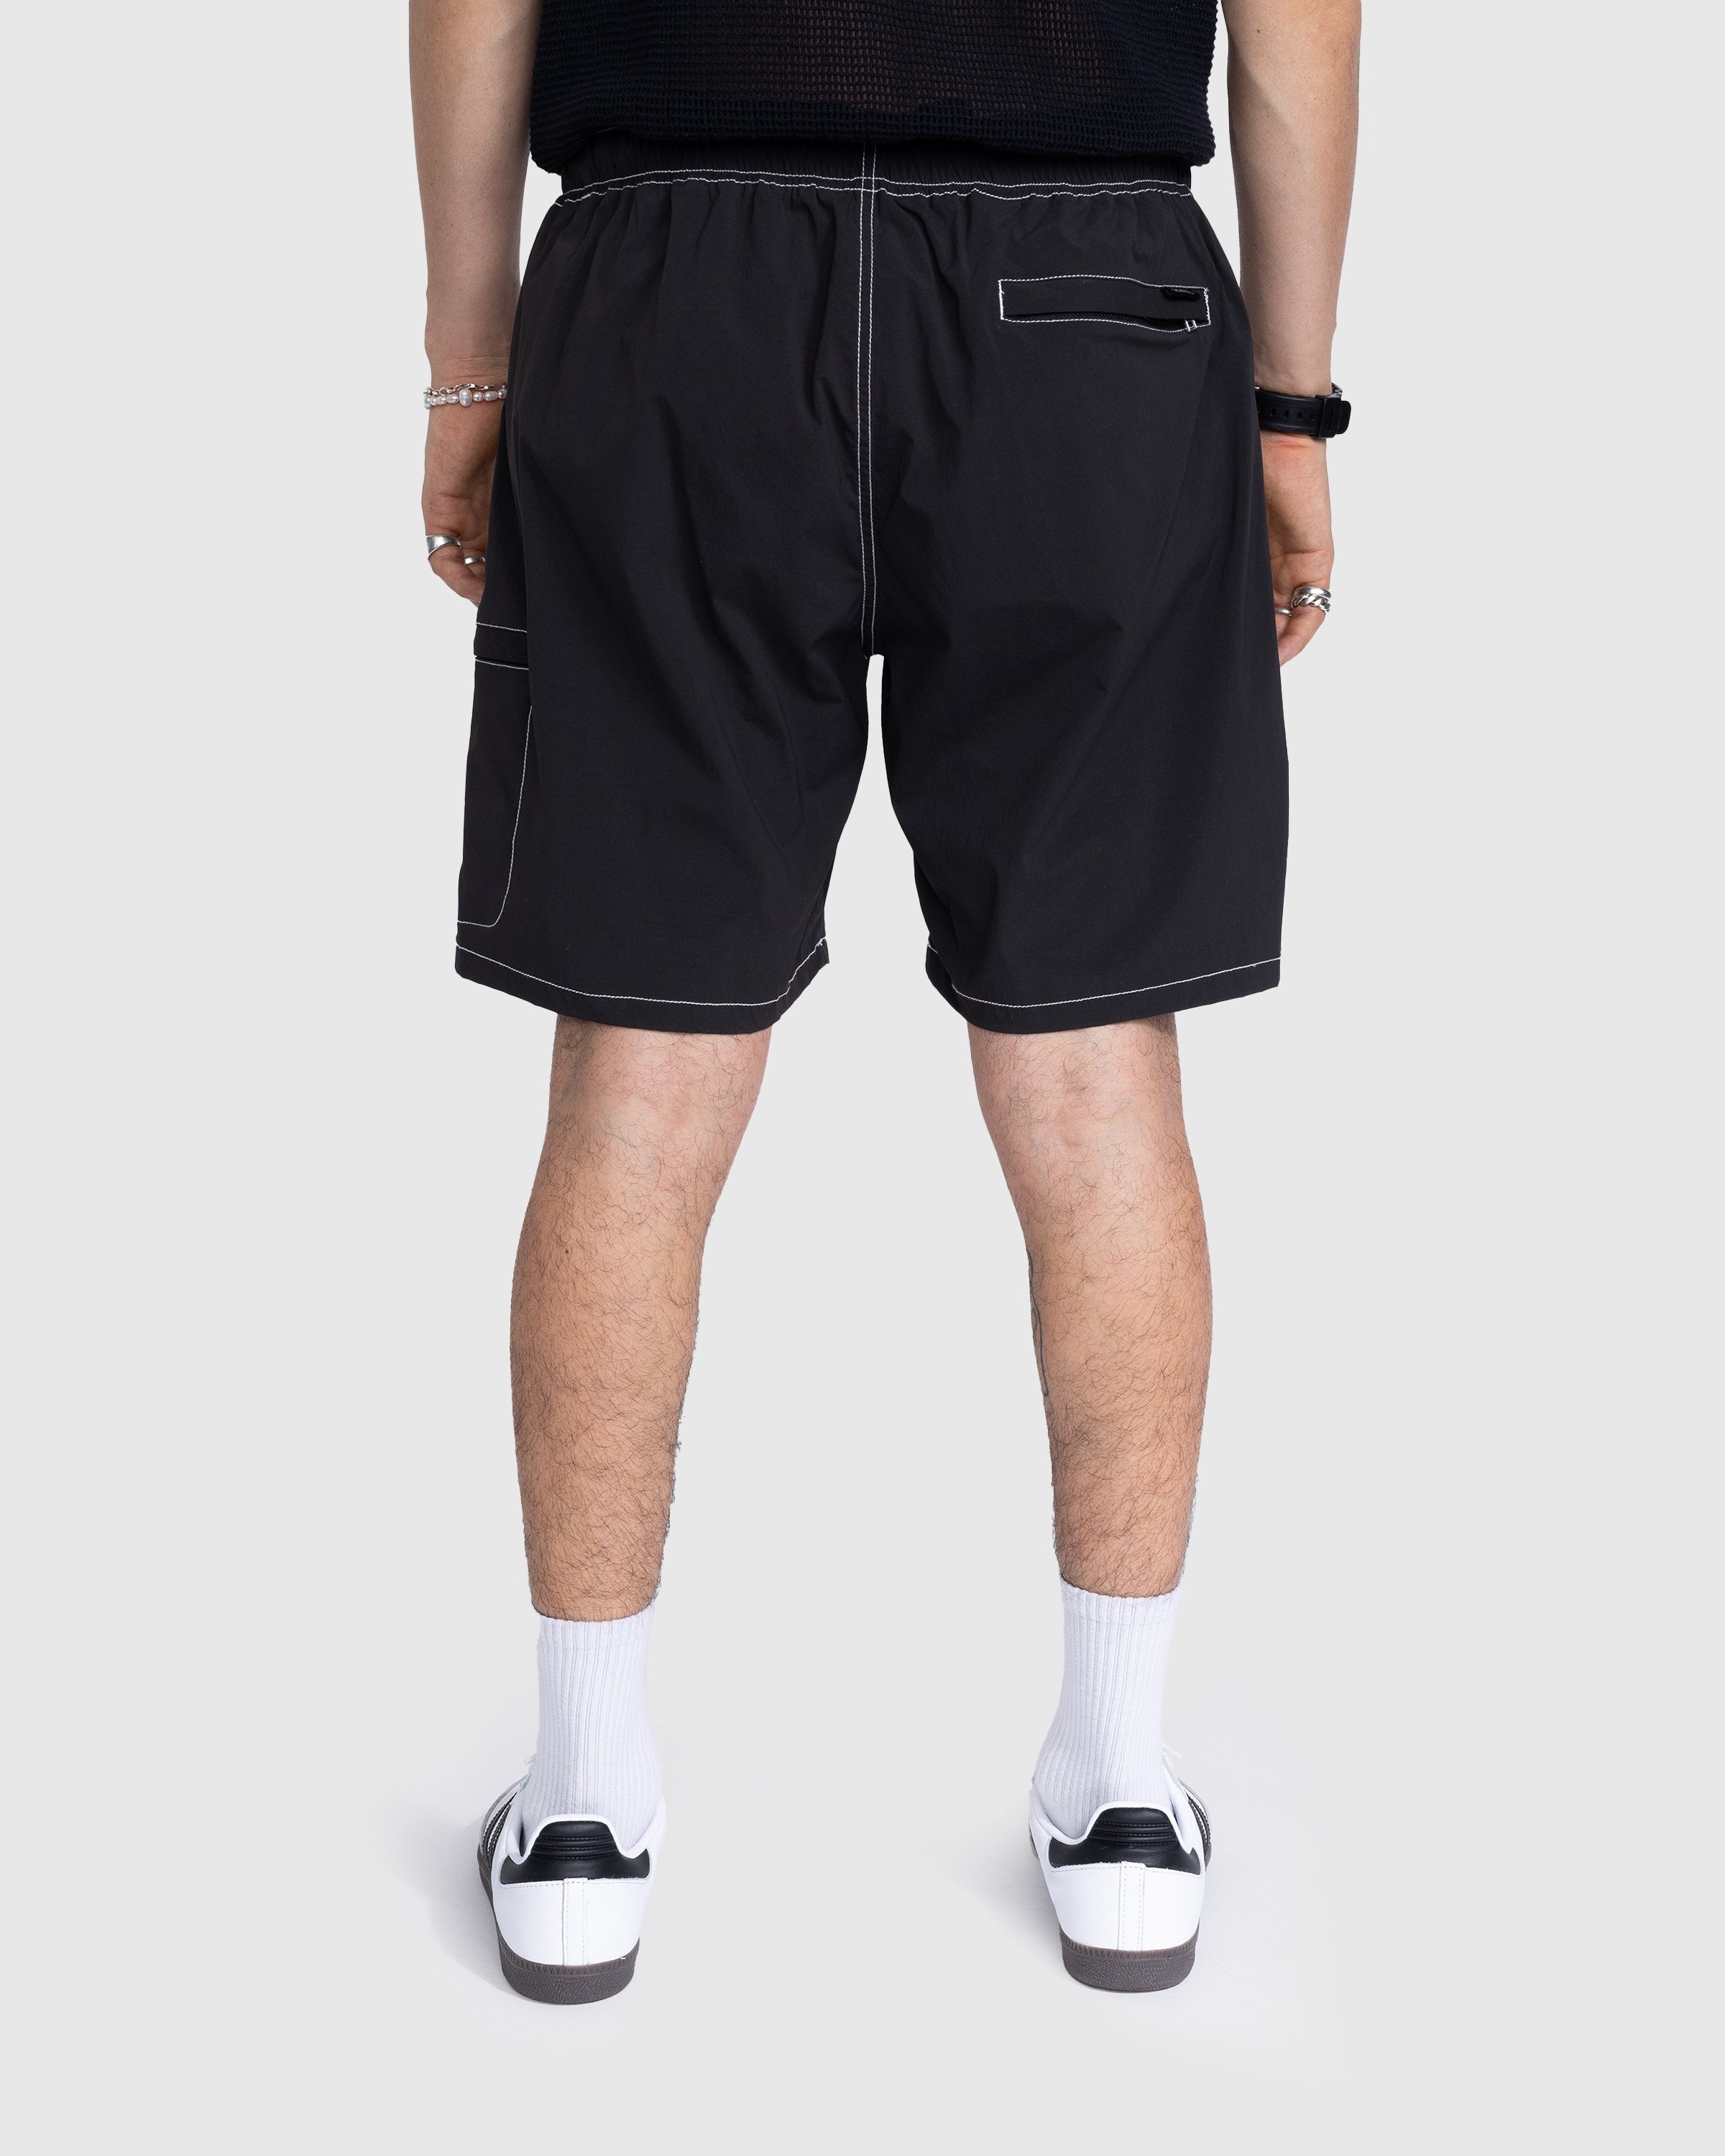 Highsnobiety – Side Cargo Shorts Charcoal Black - Active Shorts - Black - Image 3